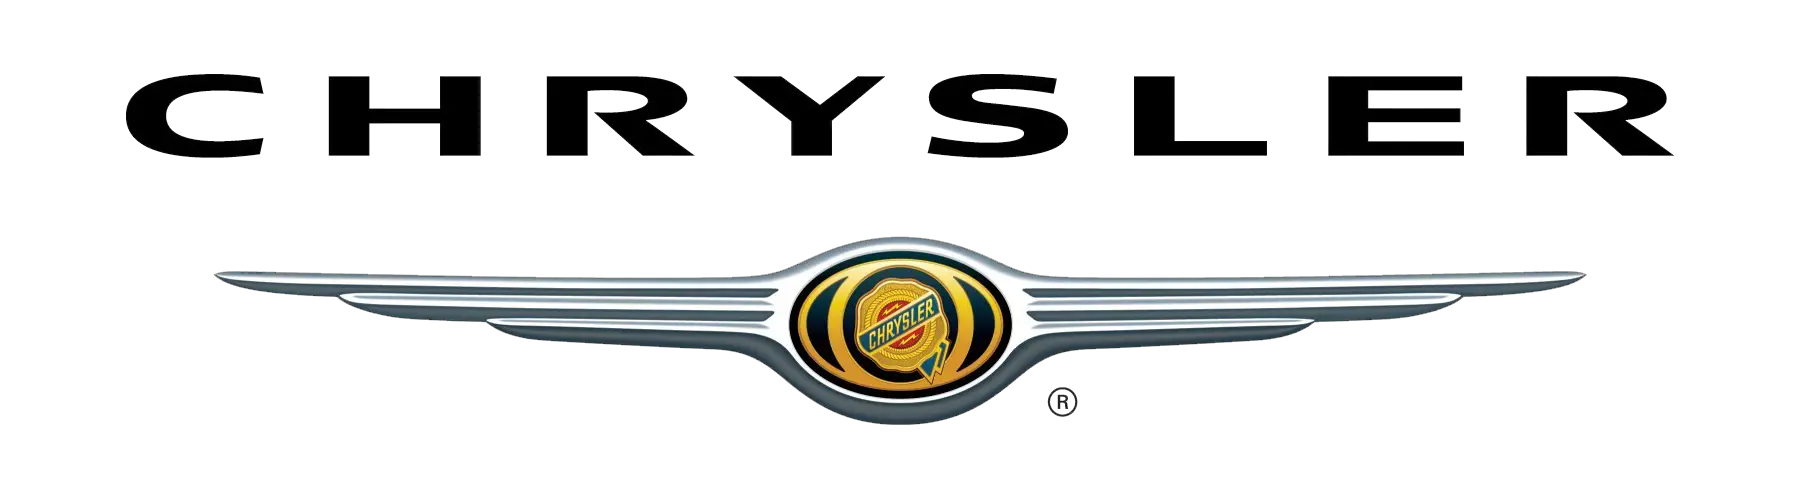 chrysler-logo-1998-download